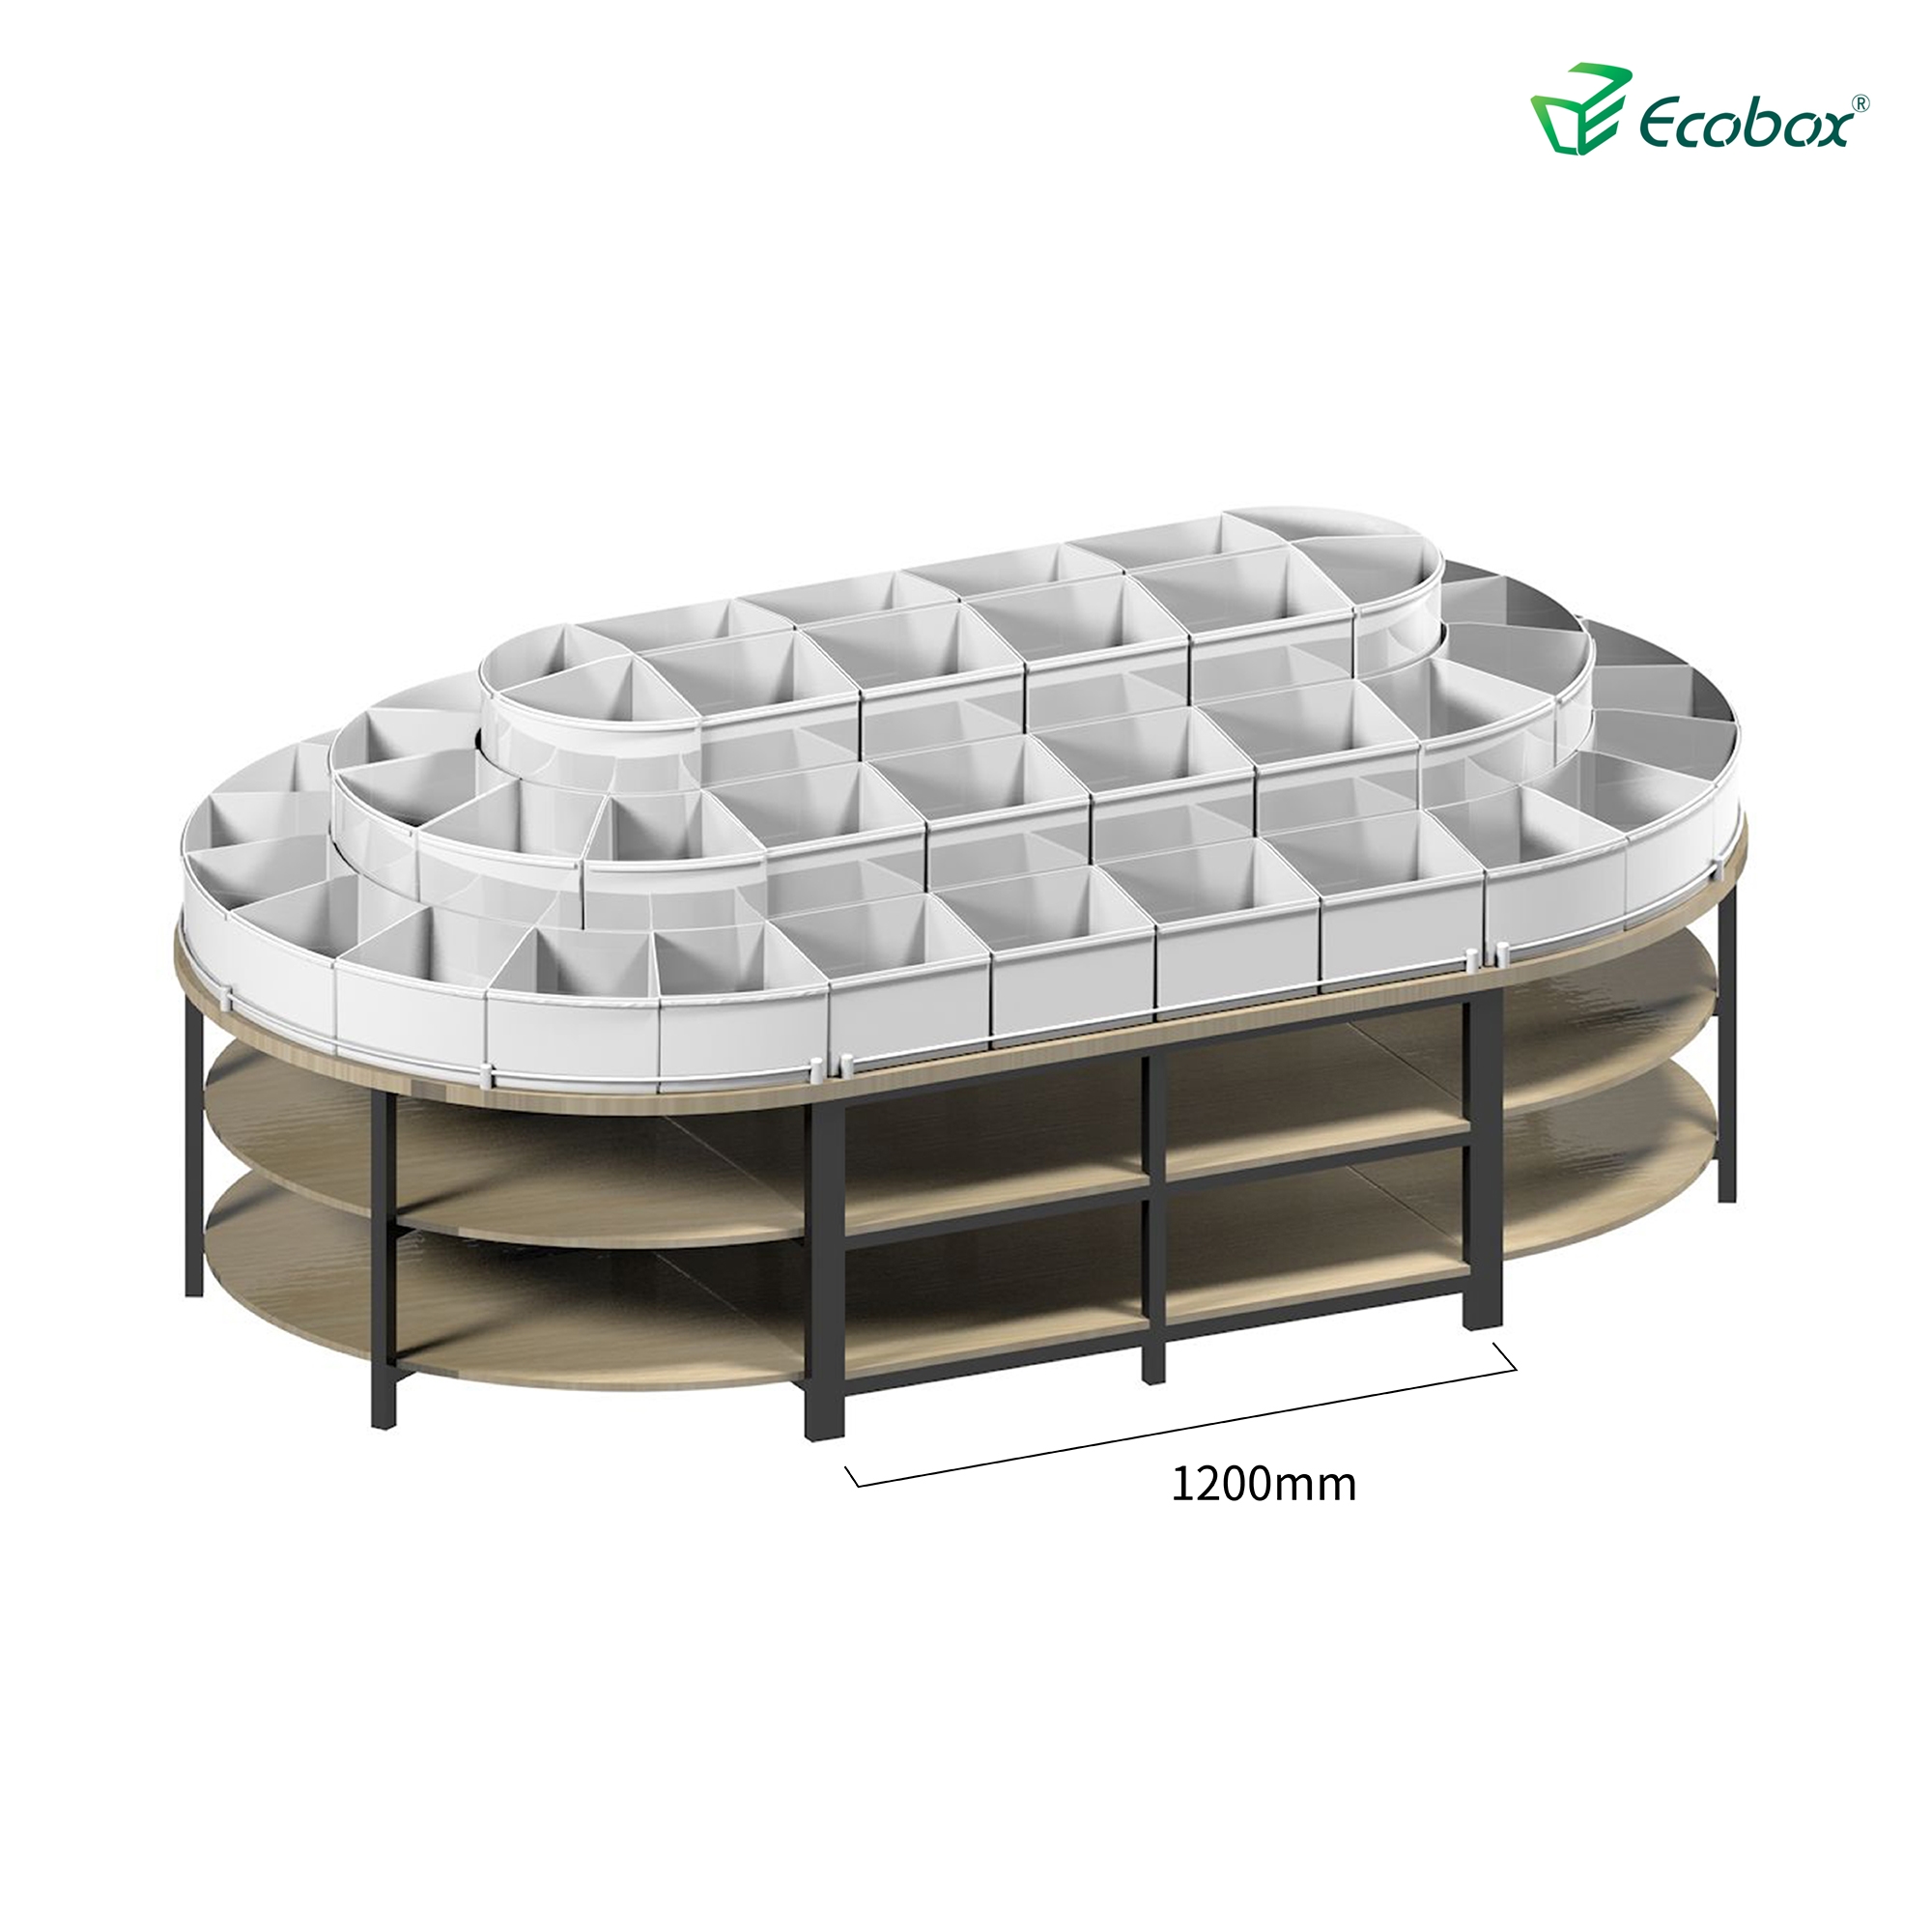 Rundes Regal der Ecobox G005-Serie mit Ecobox-Großbehältern für Supermärkte